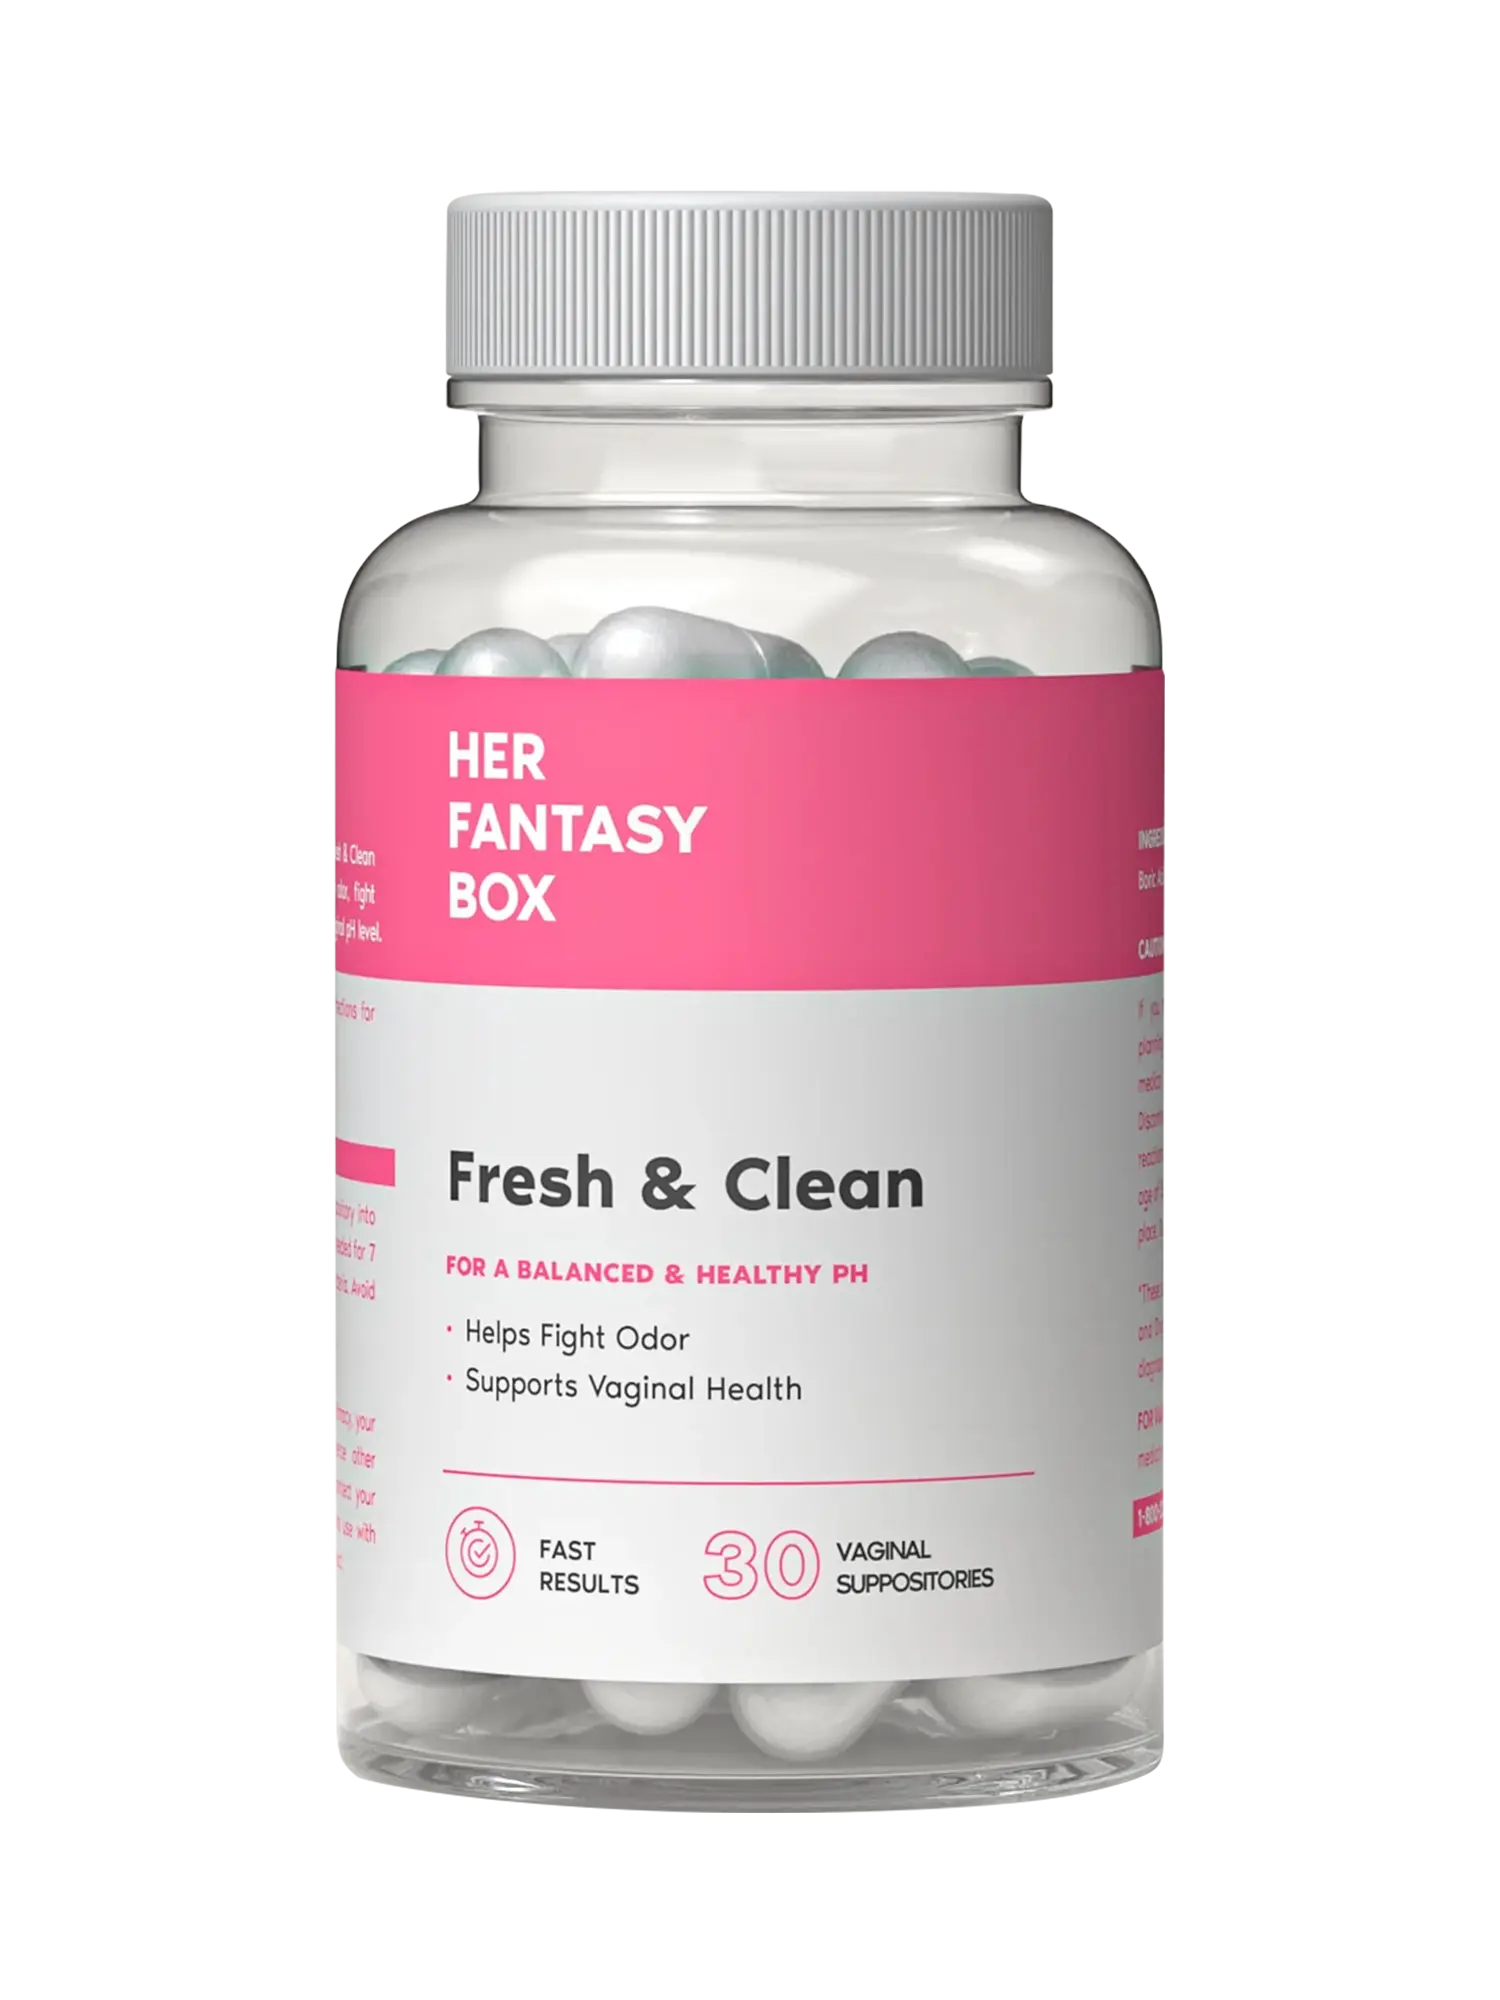 Solución para el mal olor y salud vaginal Fresh & Clean Her Fantasy Box - PURESUPPLY